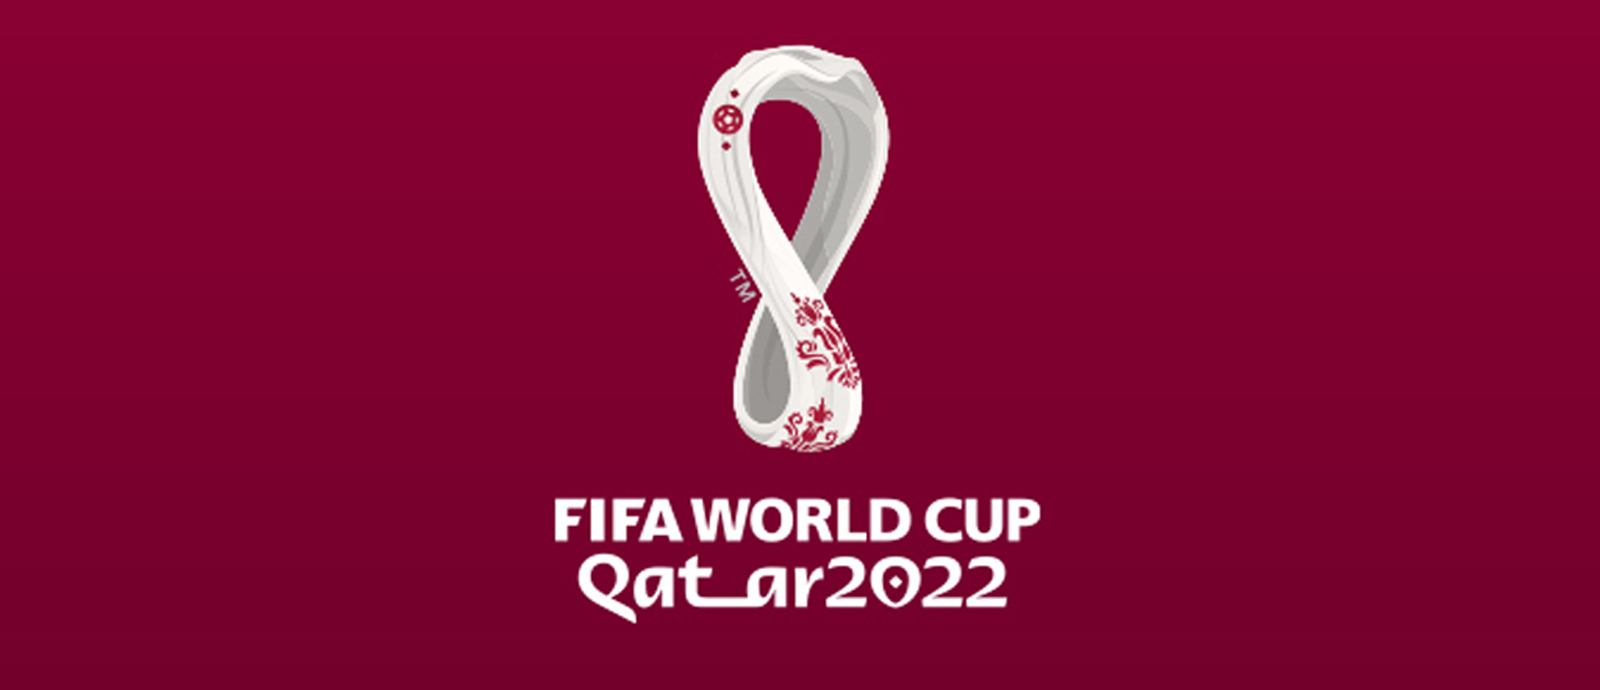 شعار كأس العالم FIFA قطر 2022